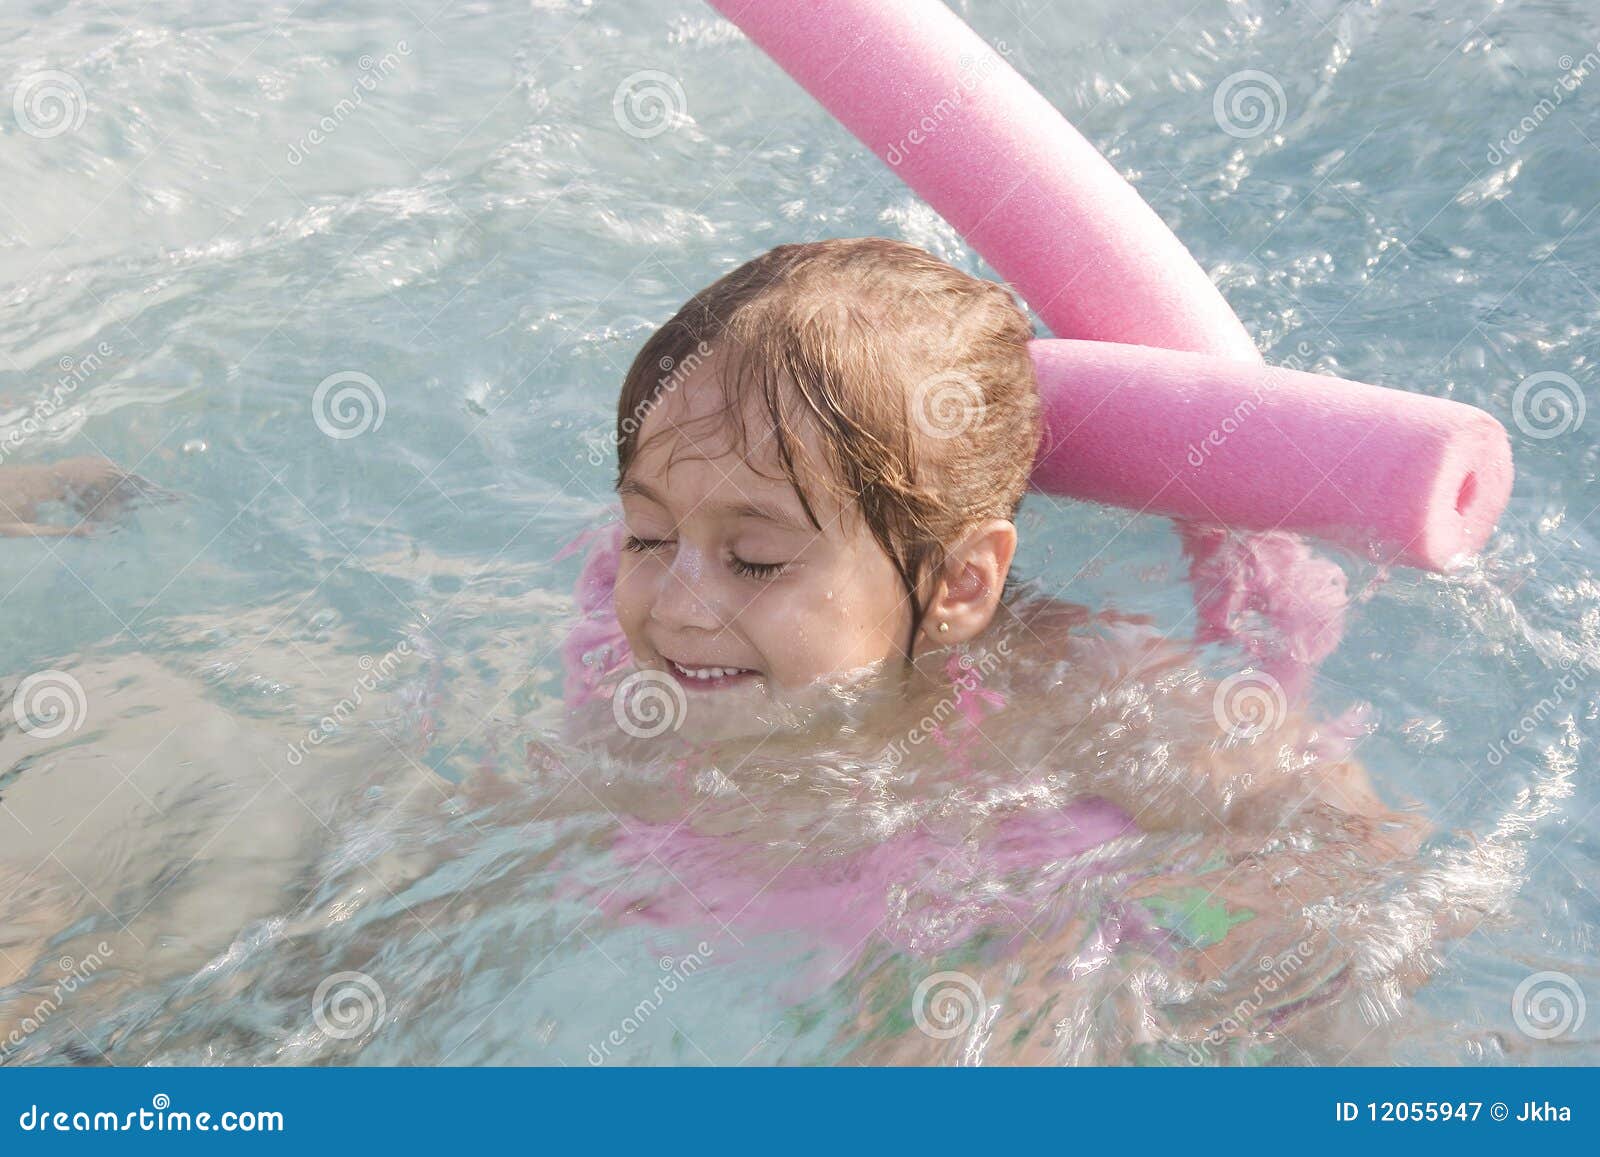 little-girl-swimming-12055947.jpg